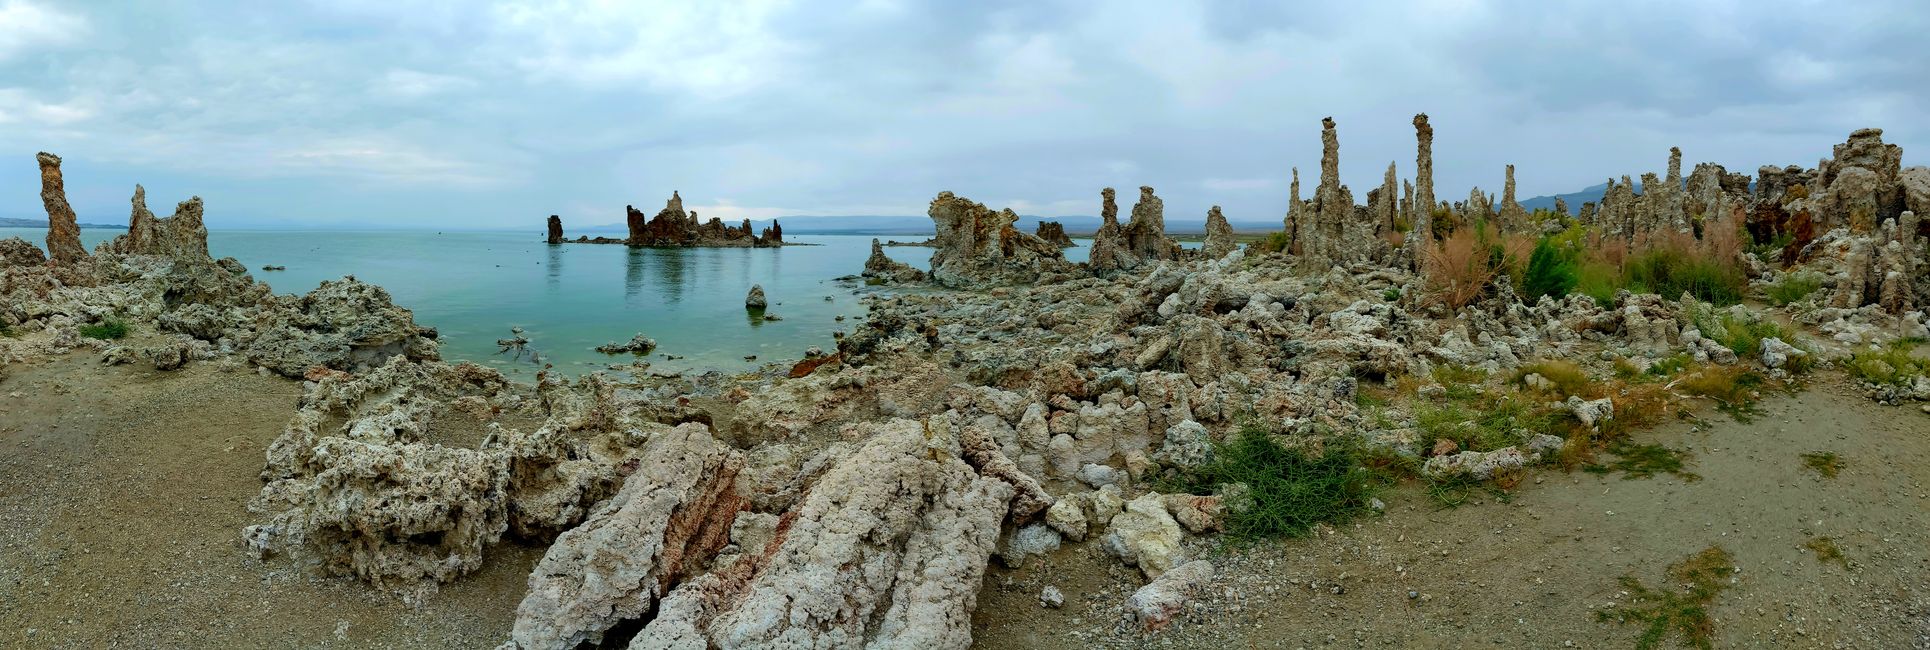 Área de Tufa Sur con muchas tufas de piedra caliza